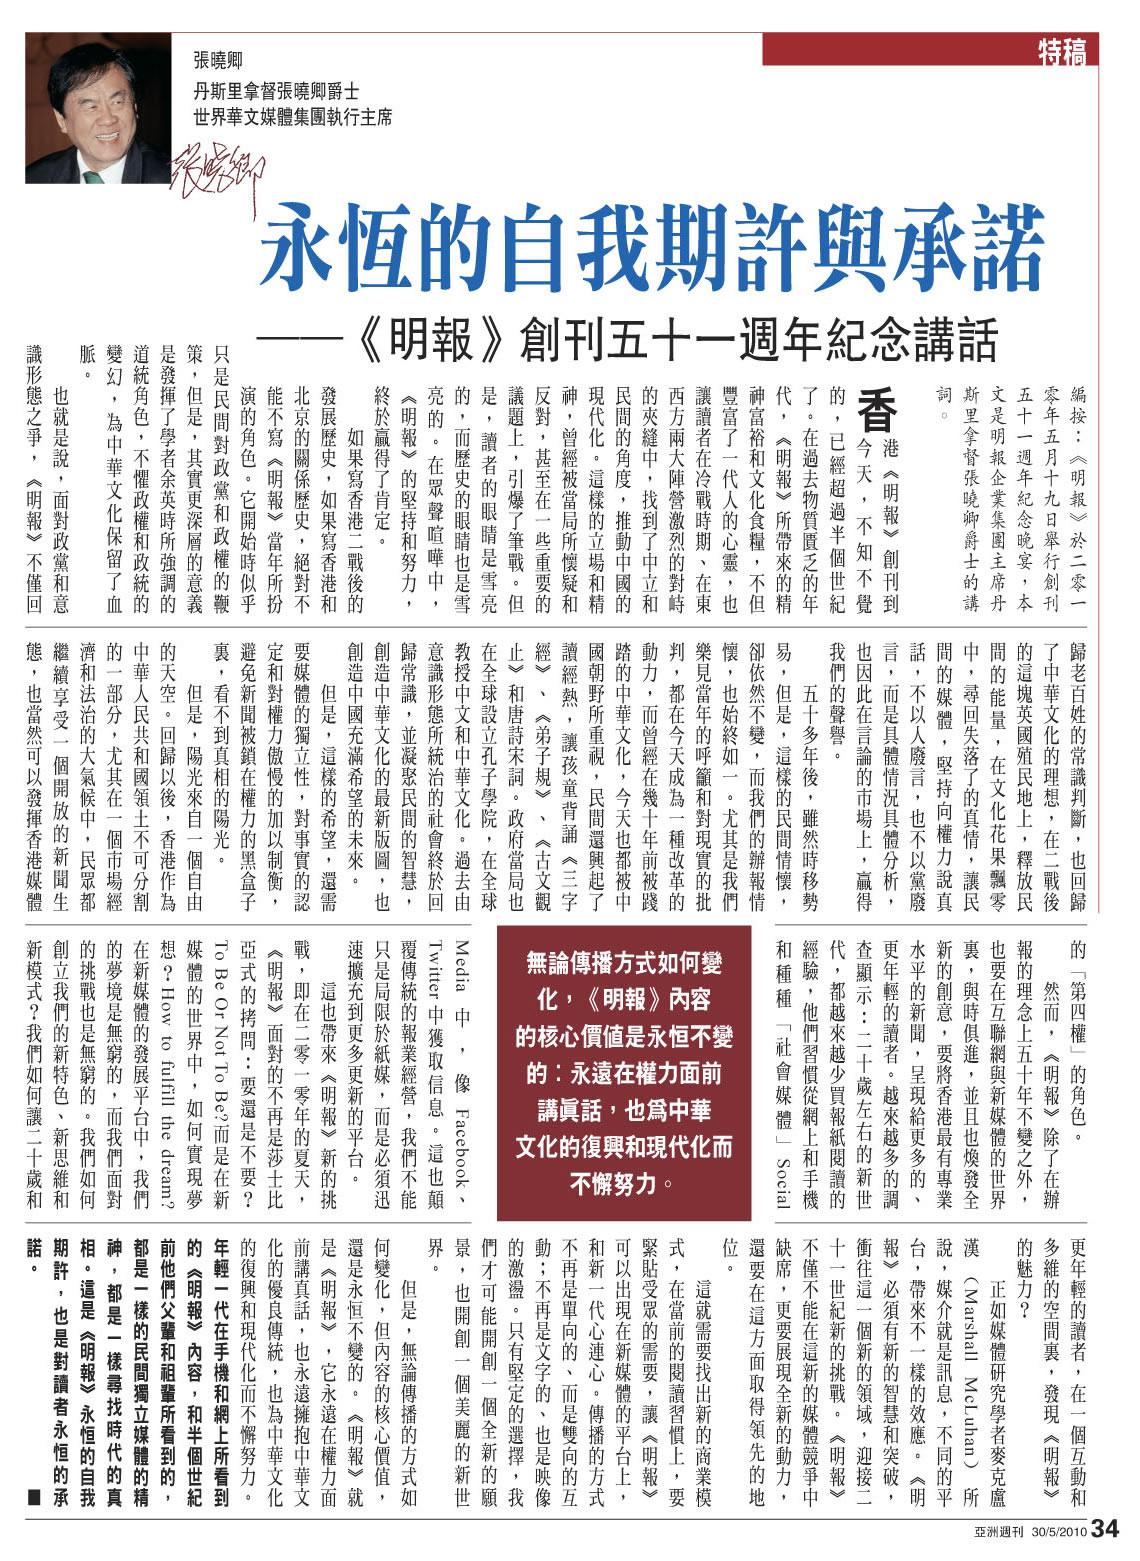 【香港】永恒的自我期许与承诺 －《明报》创刊五十一周年纪念讲话